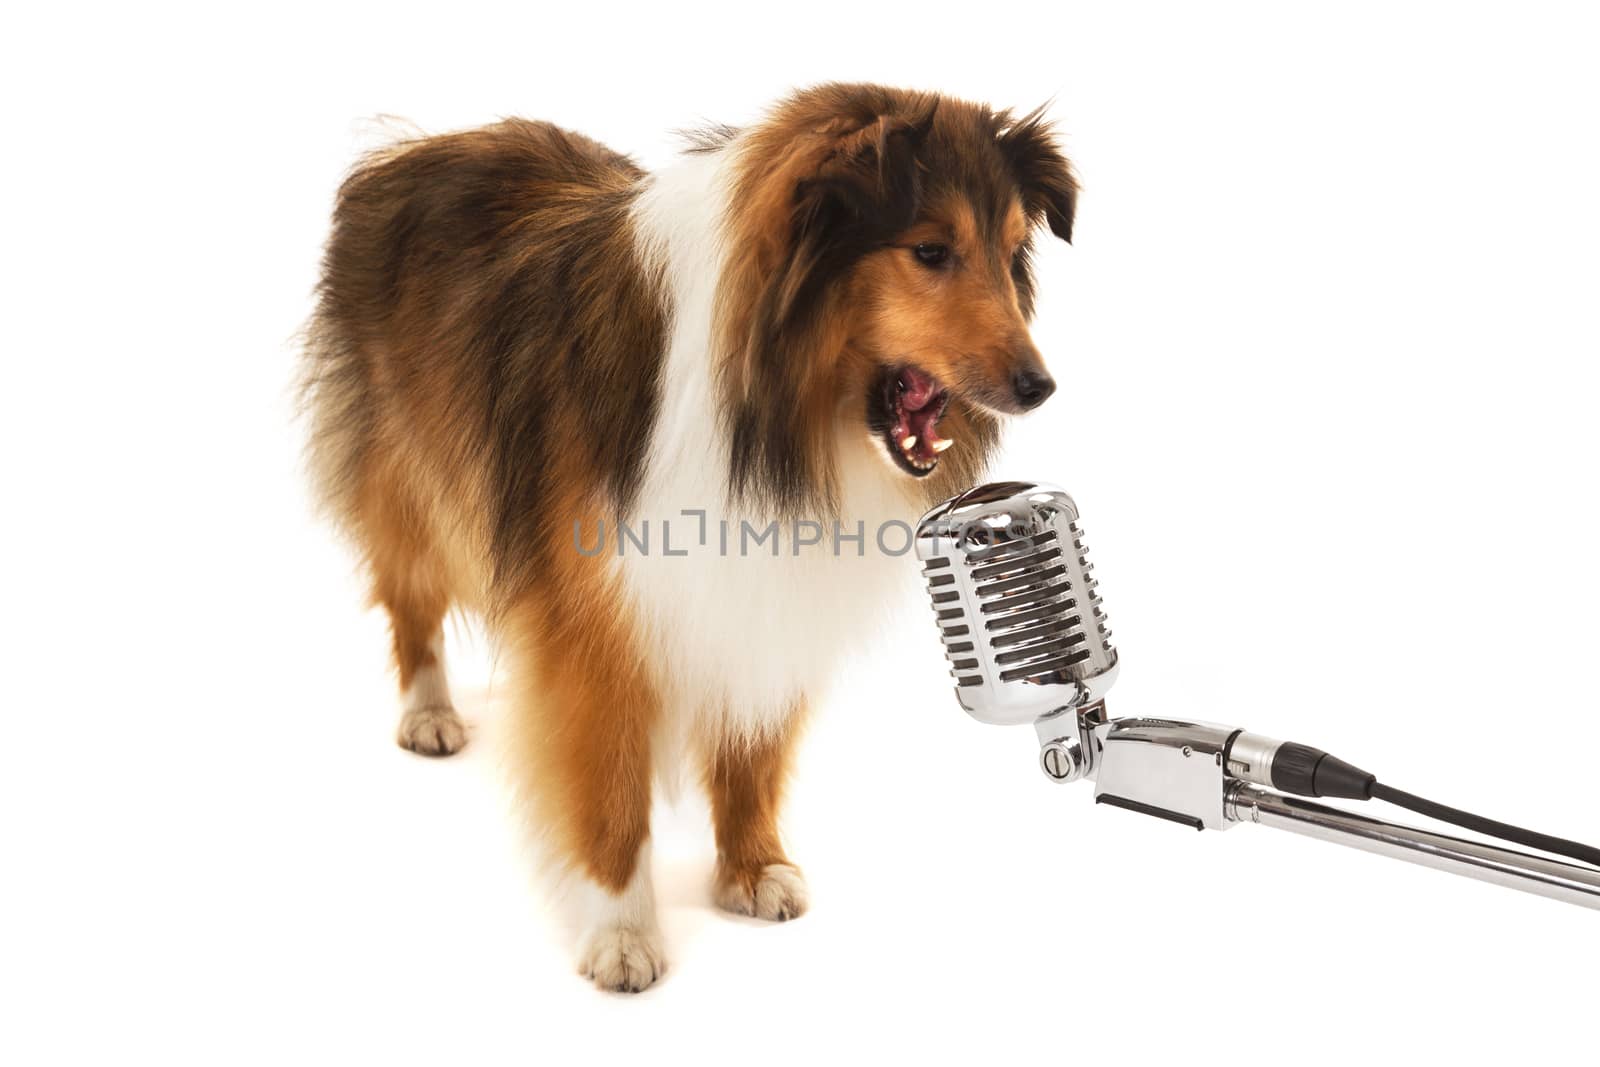 Portrait of dog singing on vintage microphone by Aarstudio